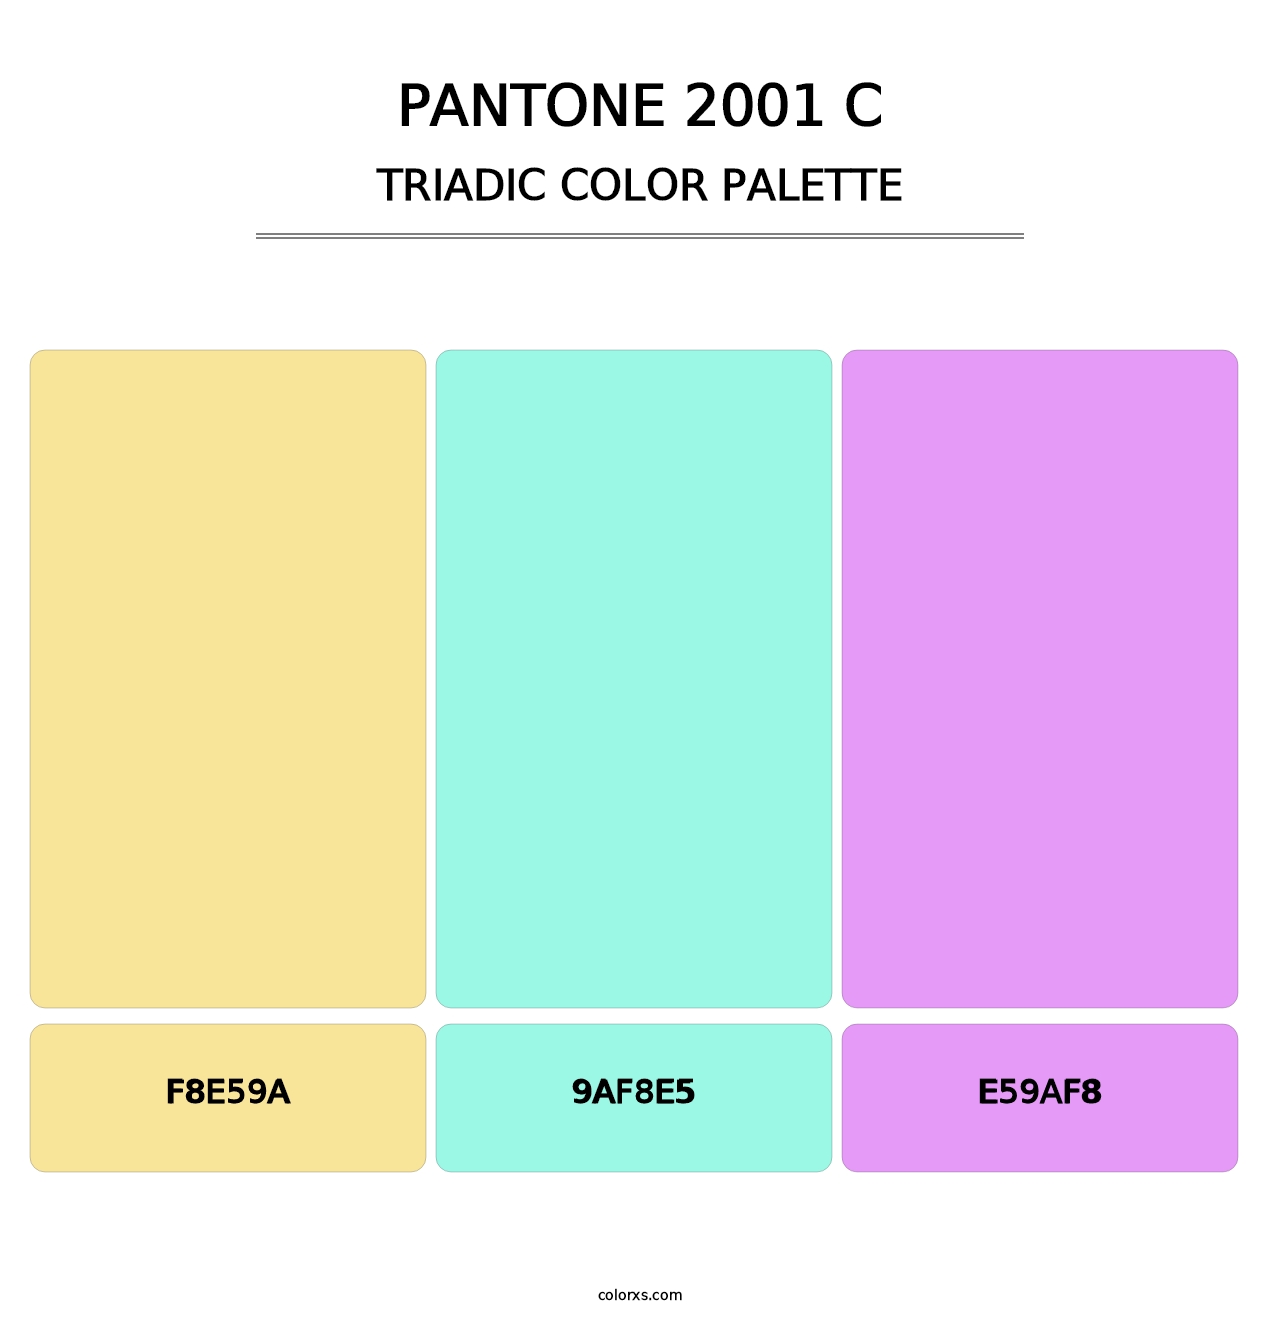 PANTONE 2001 C - Triadic Color Palette